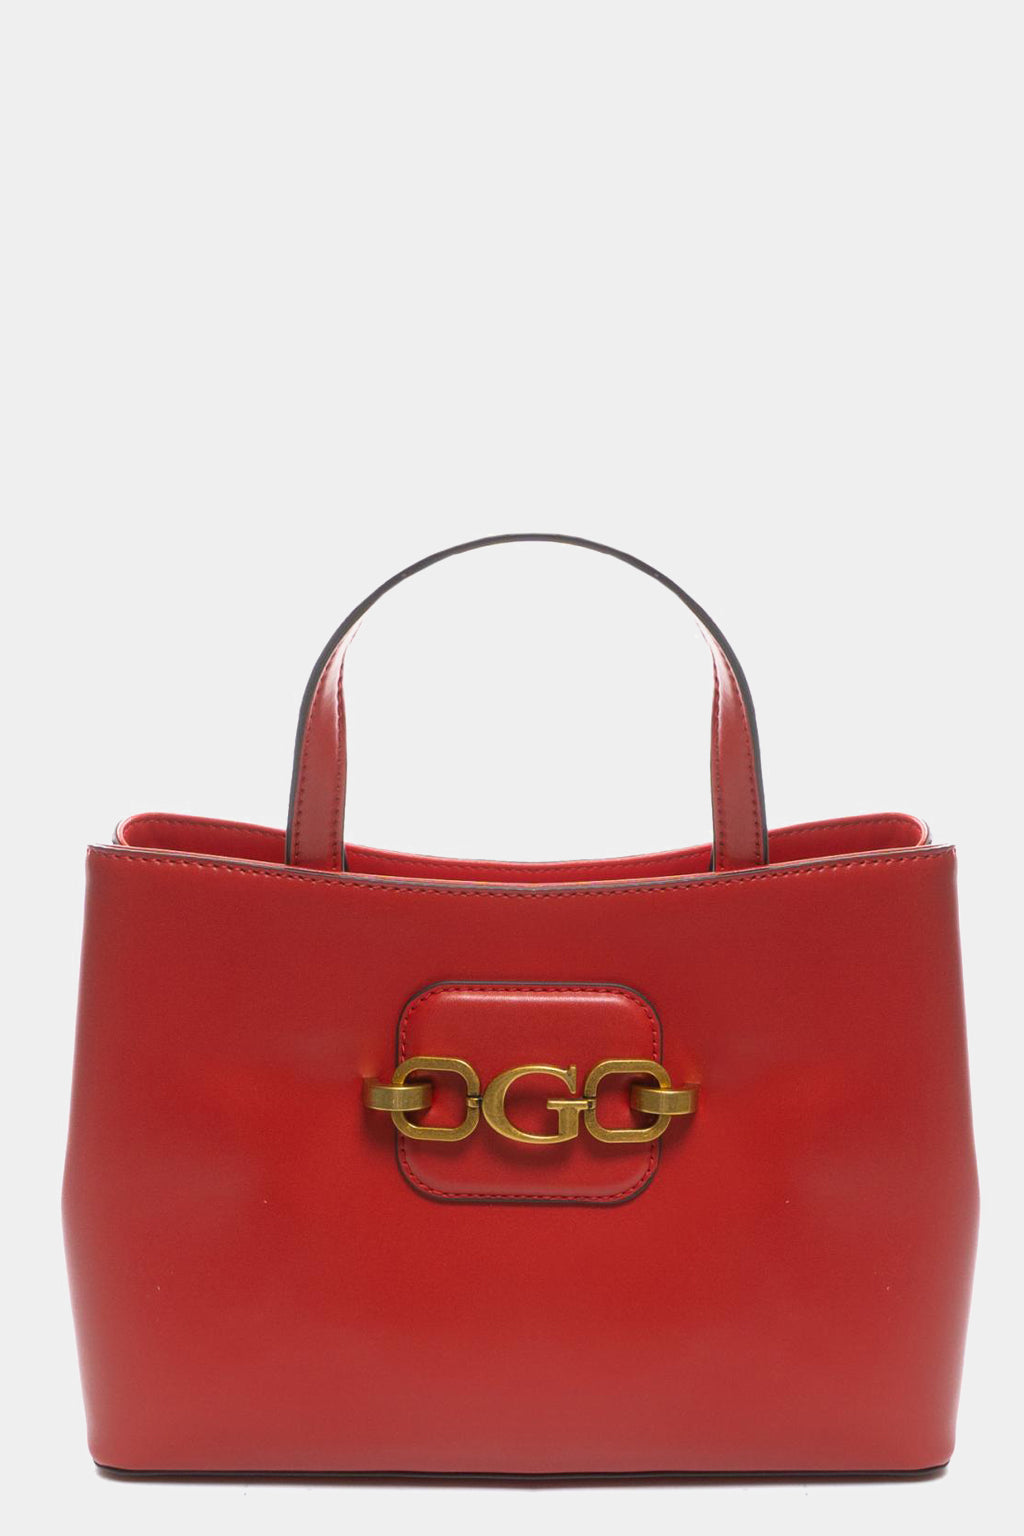 Guess - Hensely Handbag